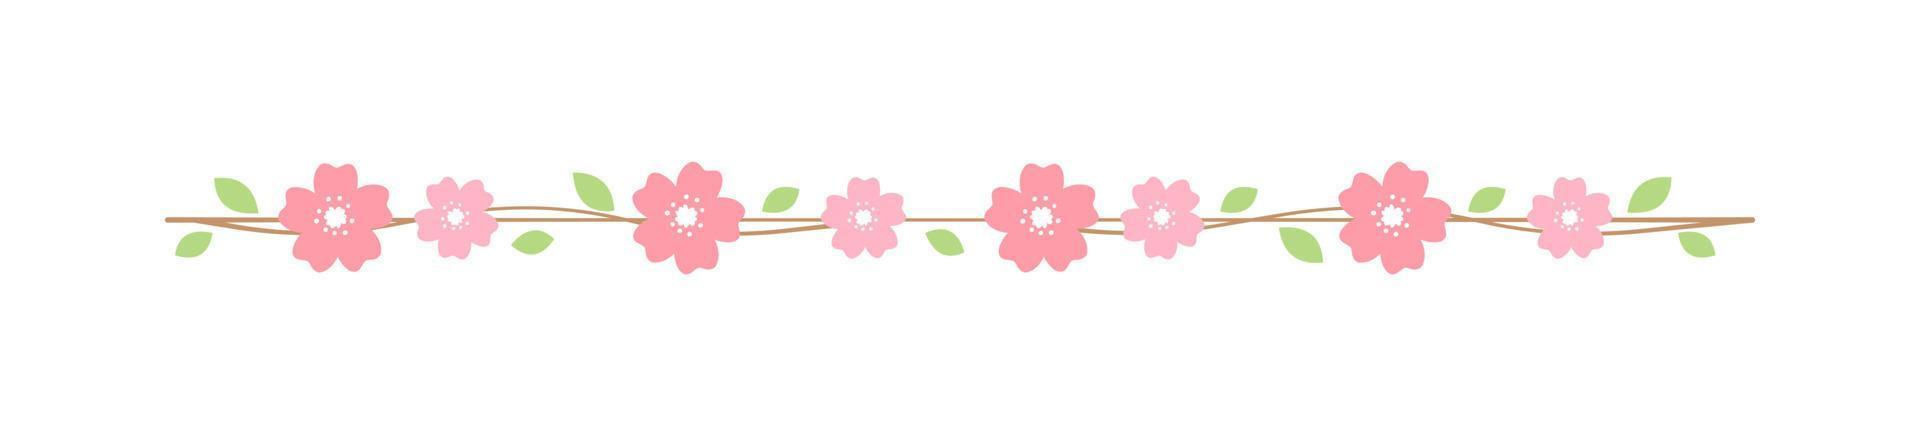 Cereza florecer divisor fronteras primavera sakura japonés flor separadores diseño elemento. vector